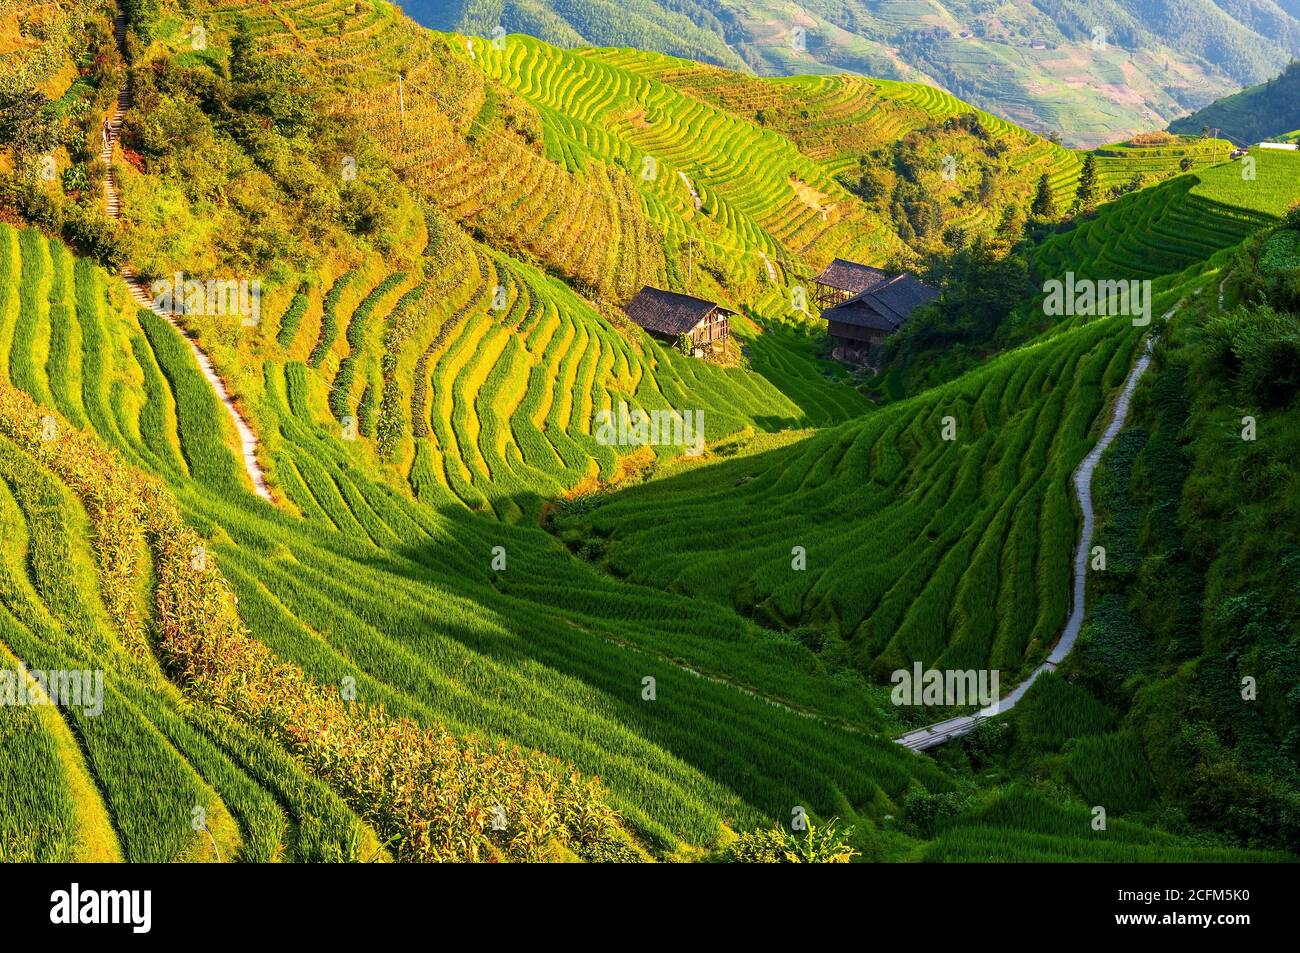 Escursioni attraverso i campi di riso terrazze nella stagione di raccolta vicino a Ping An villaggio, Longji Terraced Fields Scenic Area, Longsheng County, Guangxi, Cina. Foto Stock